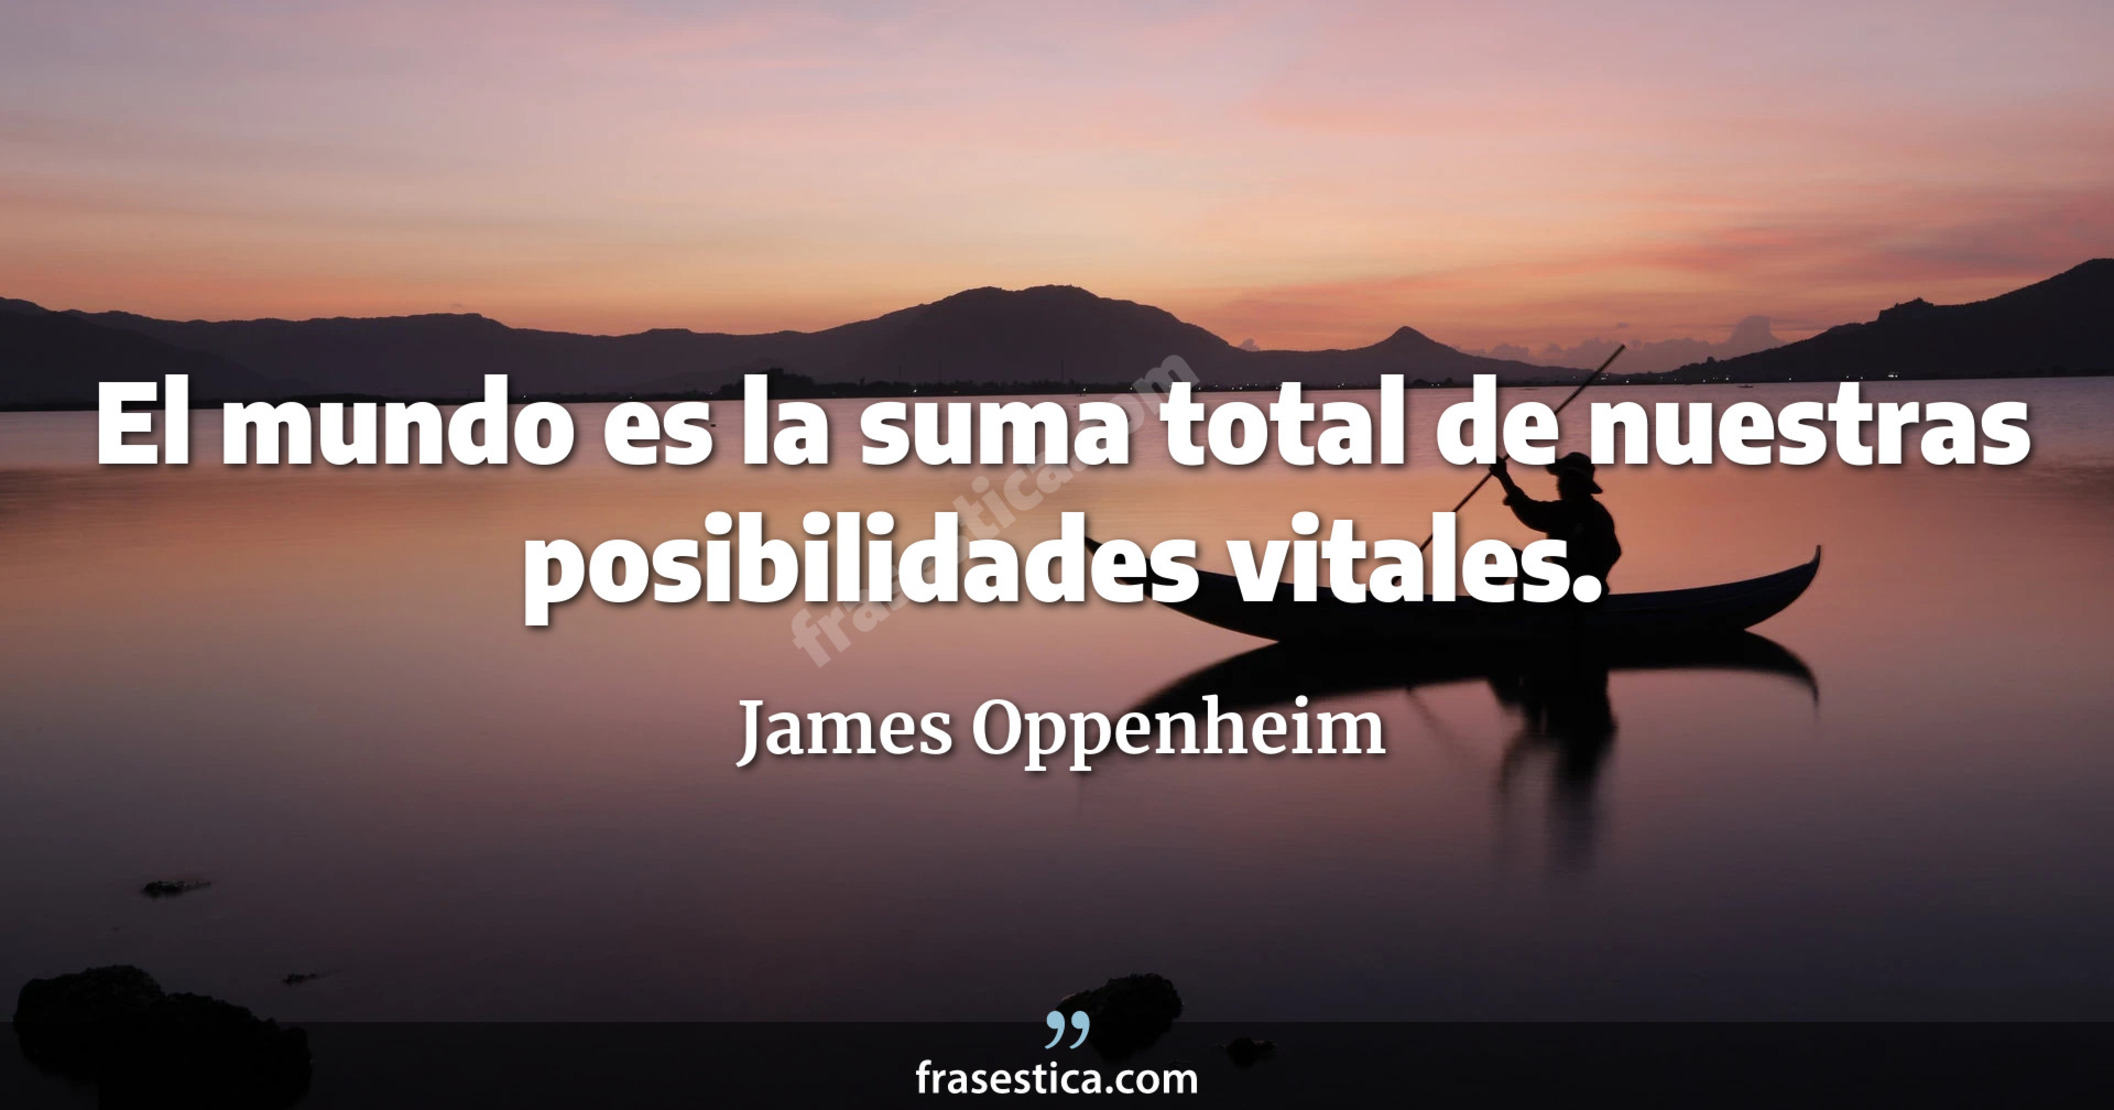 El mundo es la suma total de nuestras posibilidades vitales. - James Oppenheim